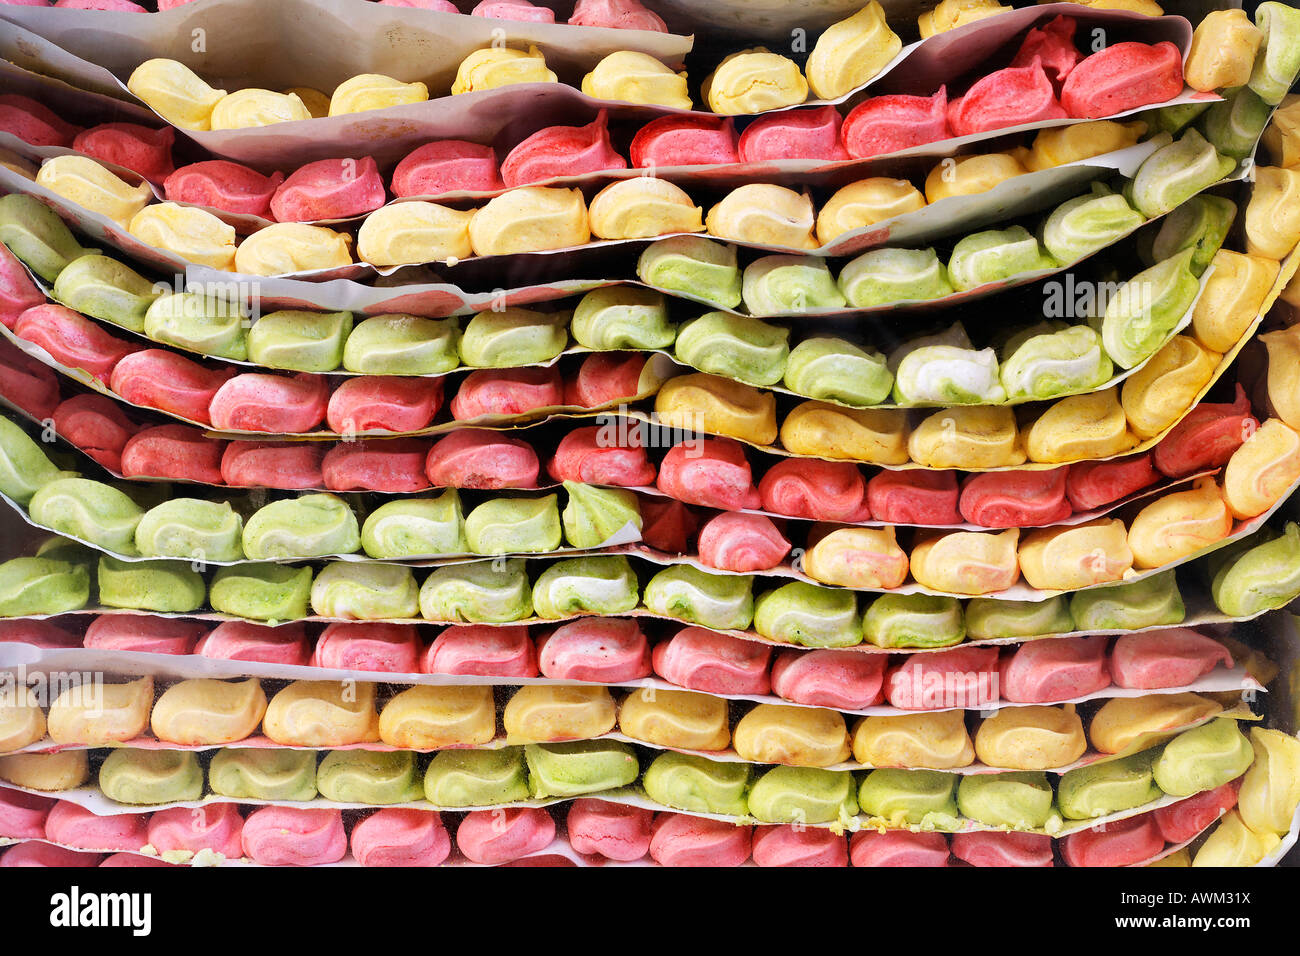 Bonbons colorés superposés dans une vitrine, quartier historique de la médina, Marrakech, Maroc, Afrique Banque D'Images